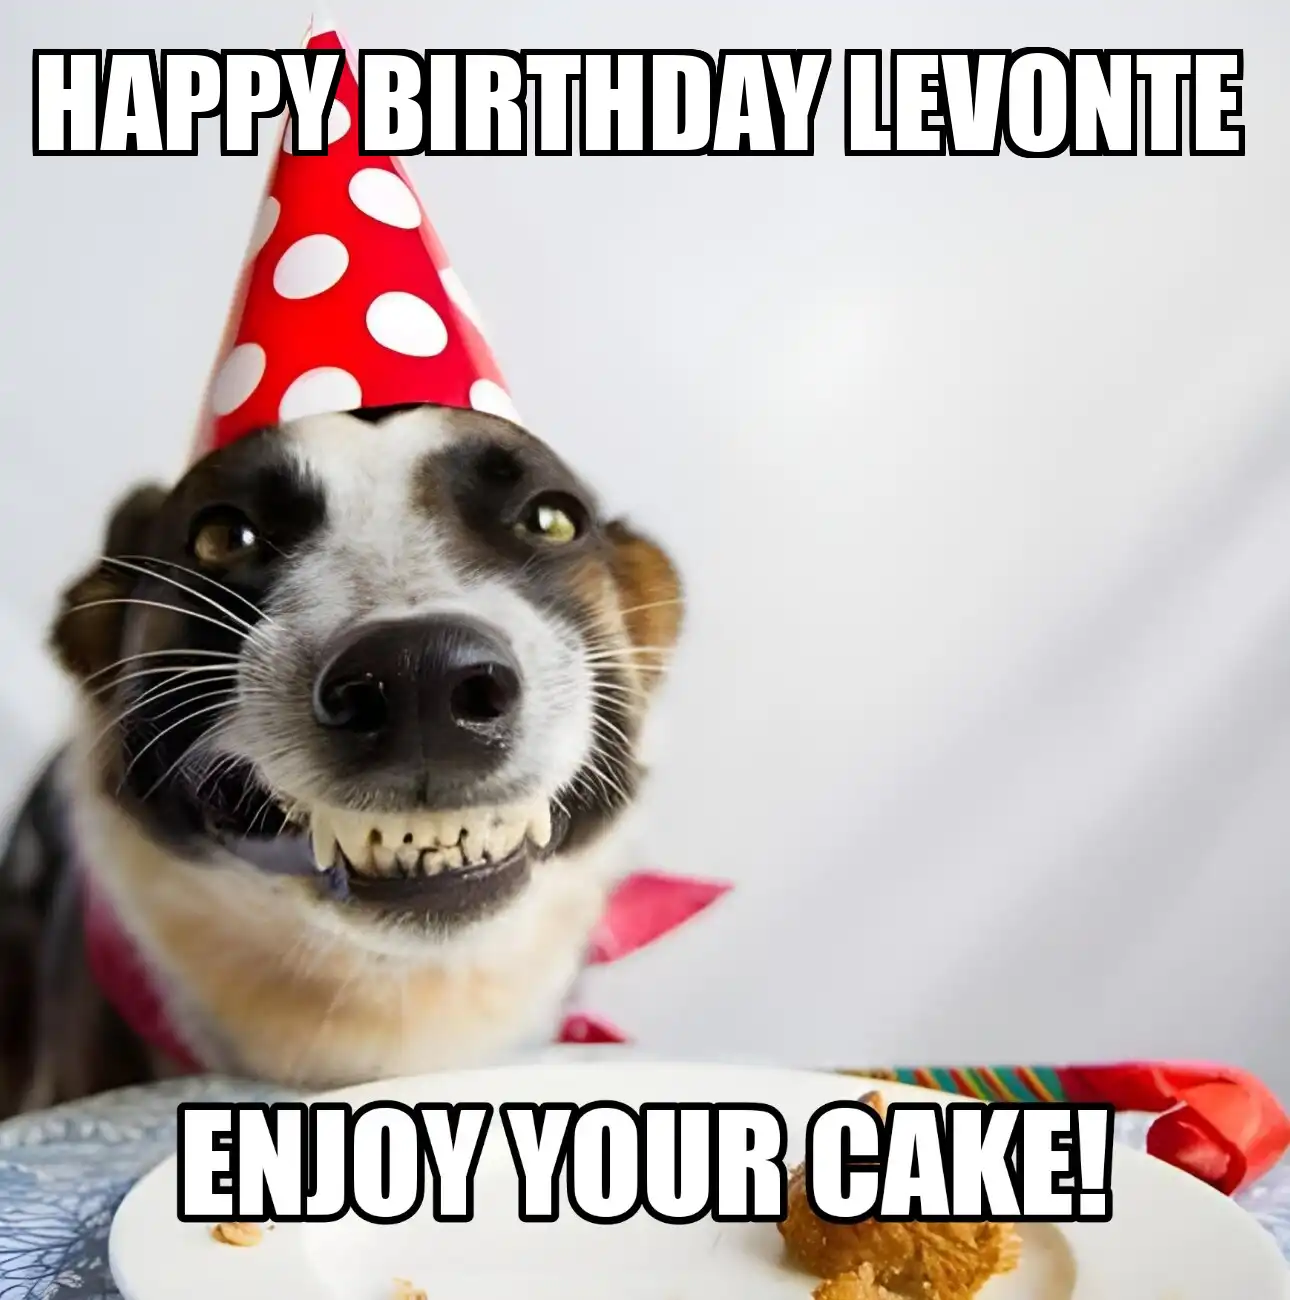 Happy Birthday Levonte Enjoy Your Cake Dog Meme